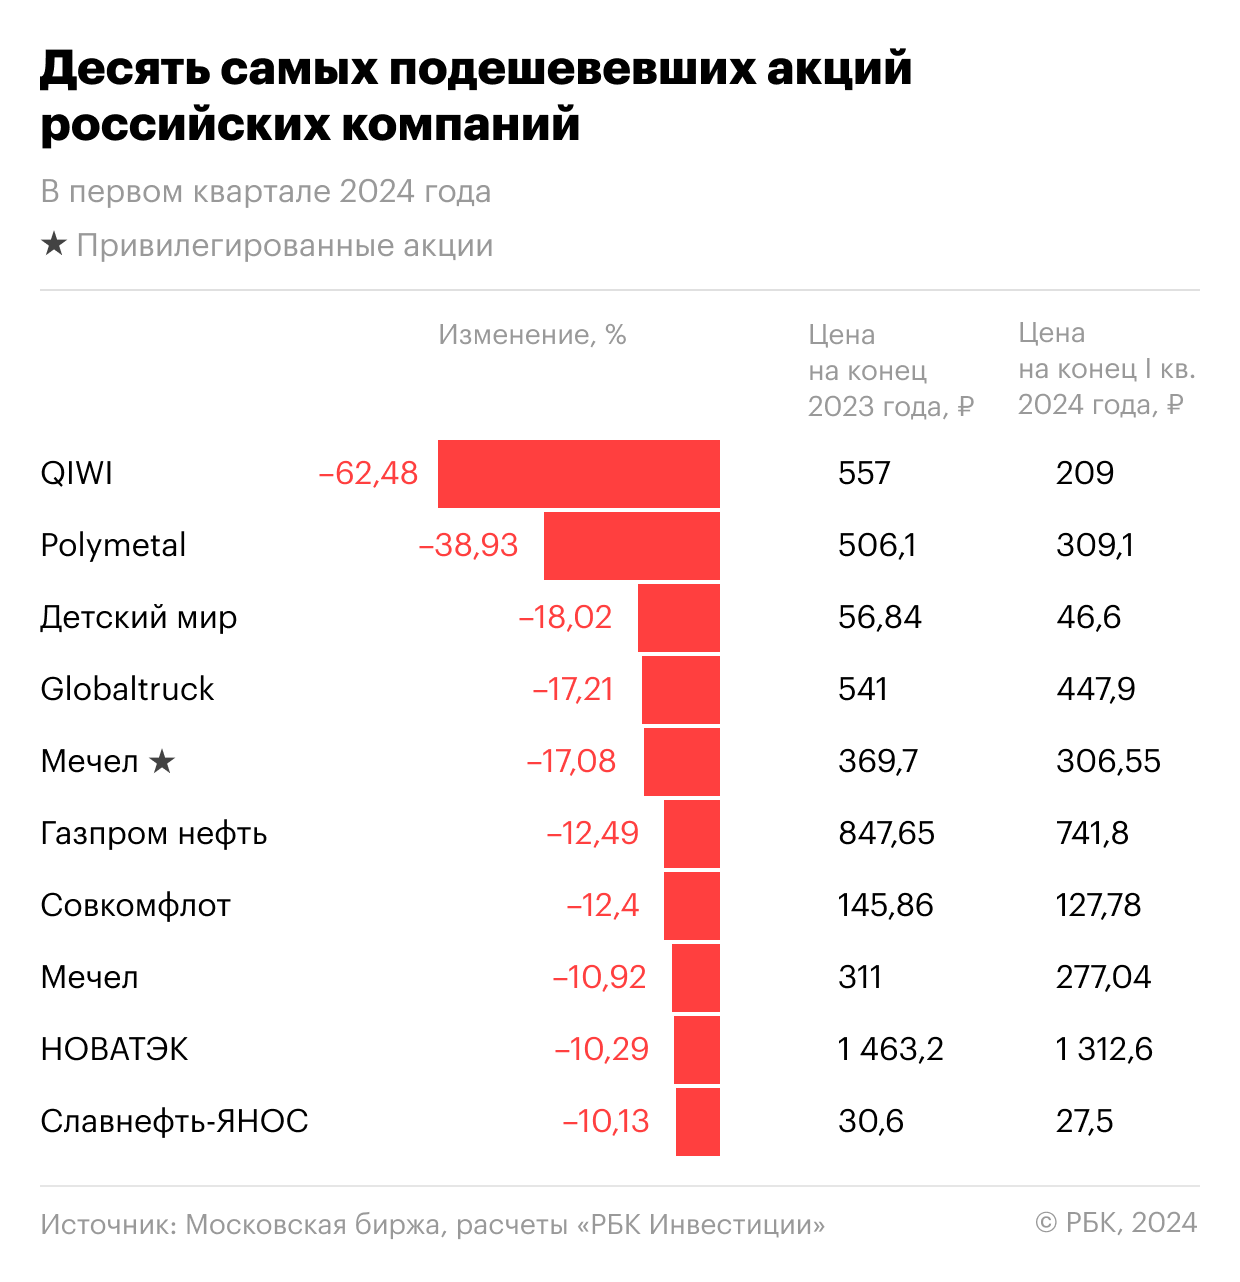 Десять самых подешевевших в первом квартале 2024 года акций российских компаний